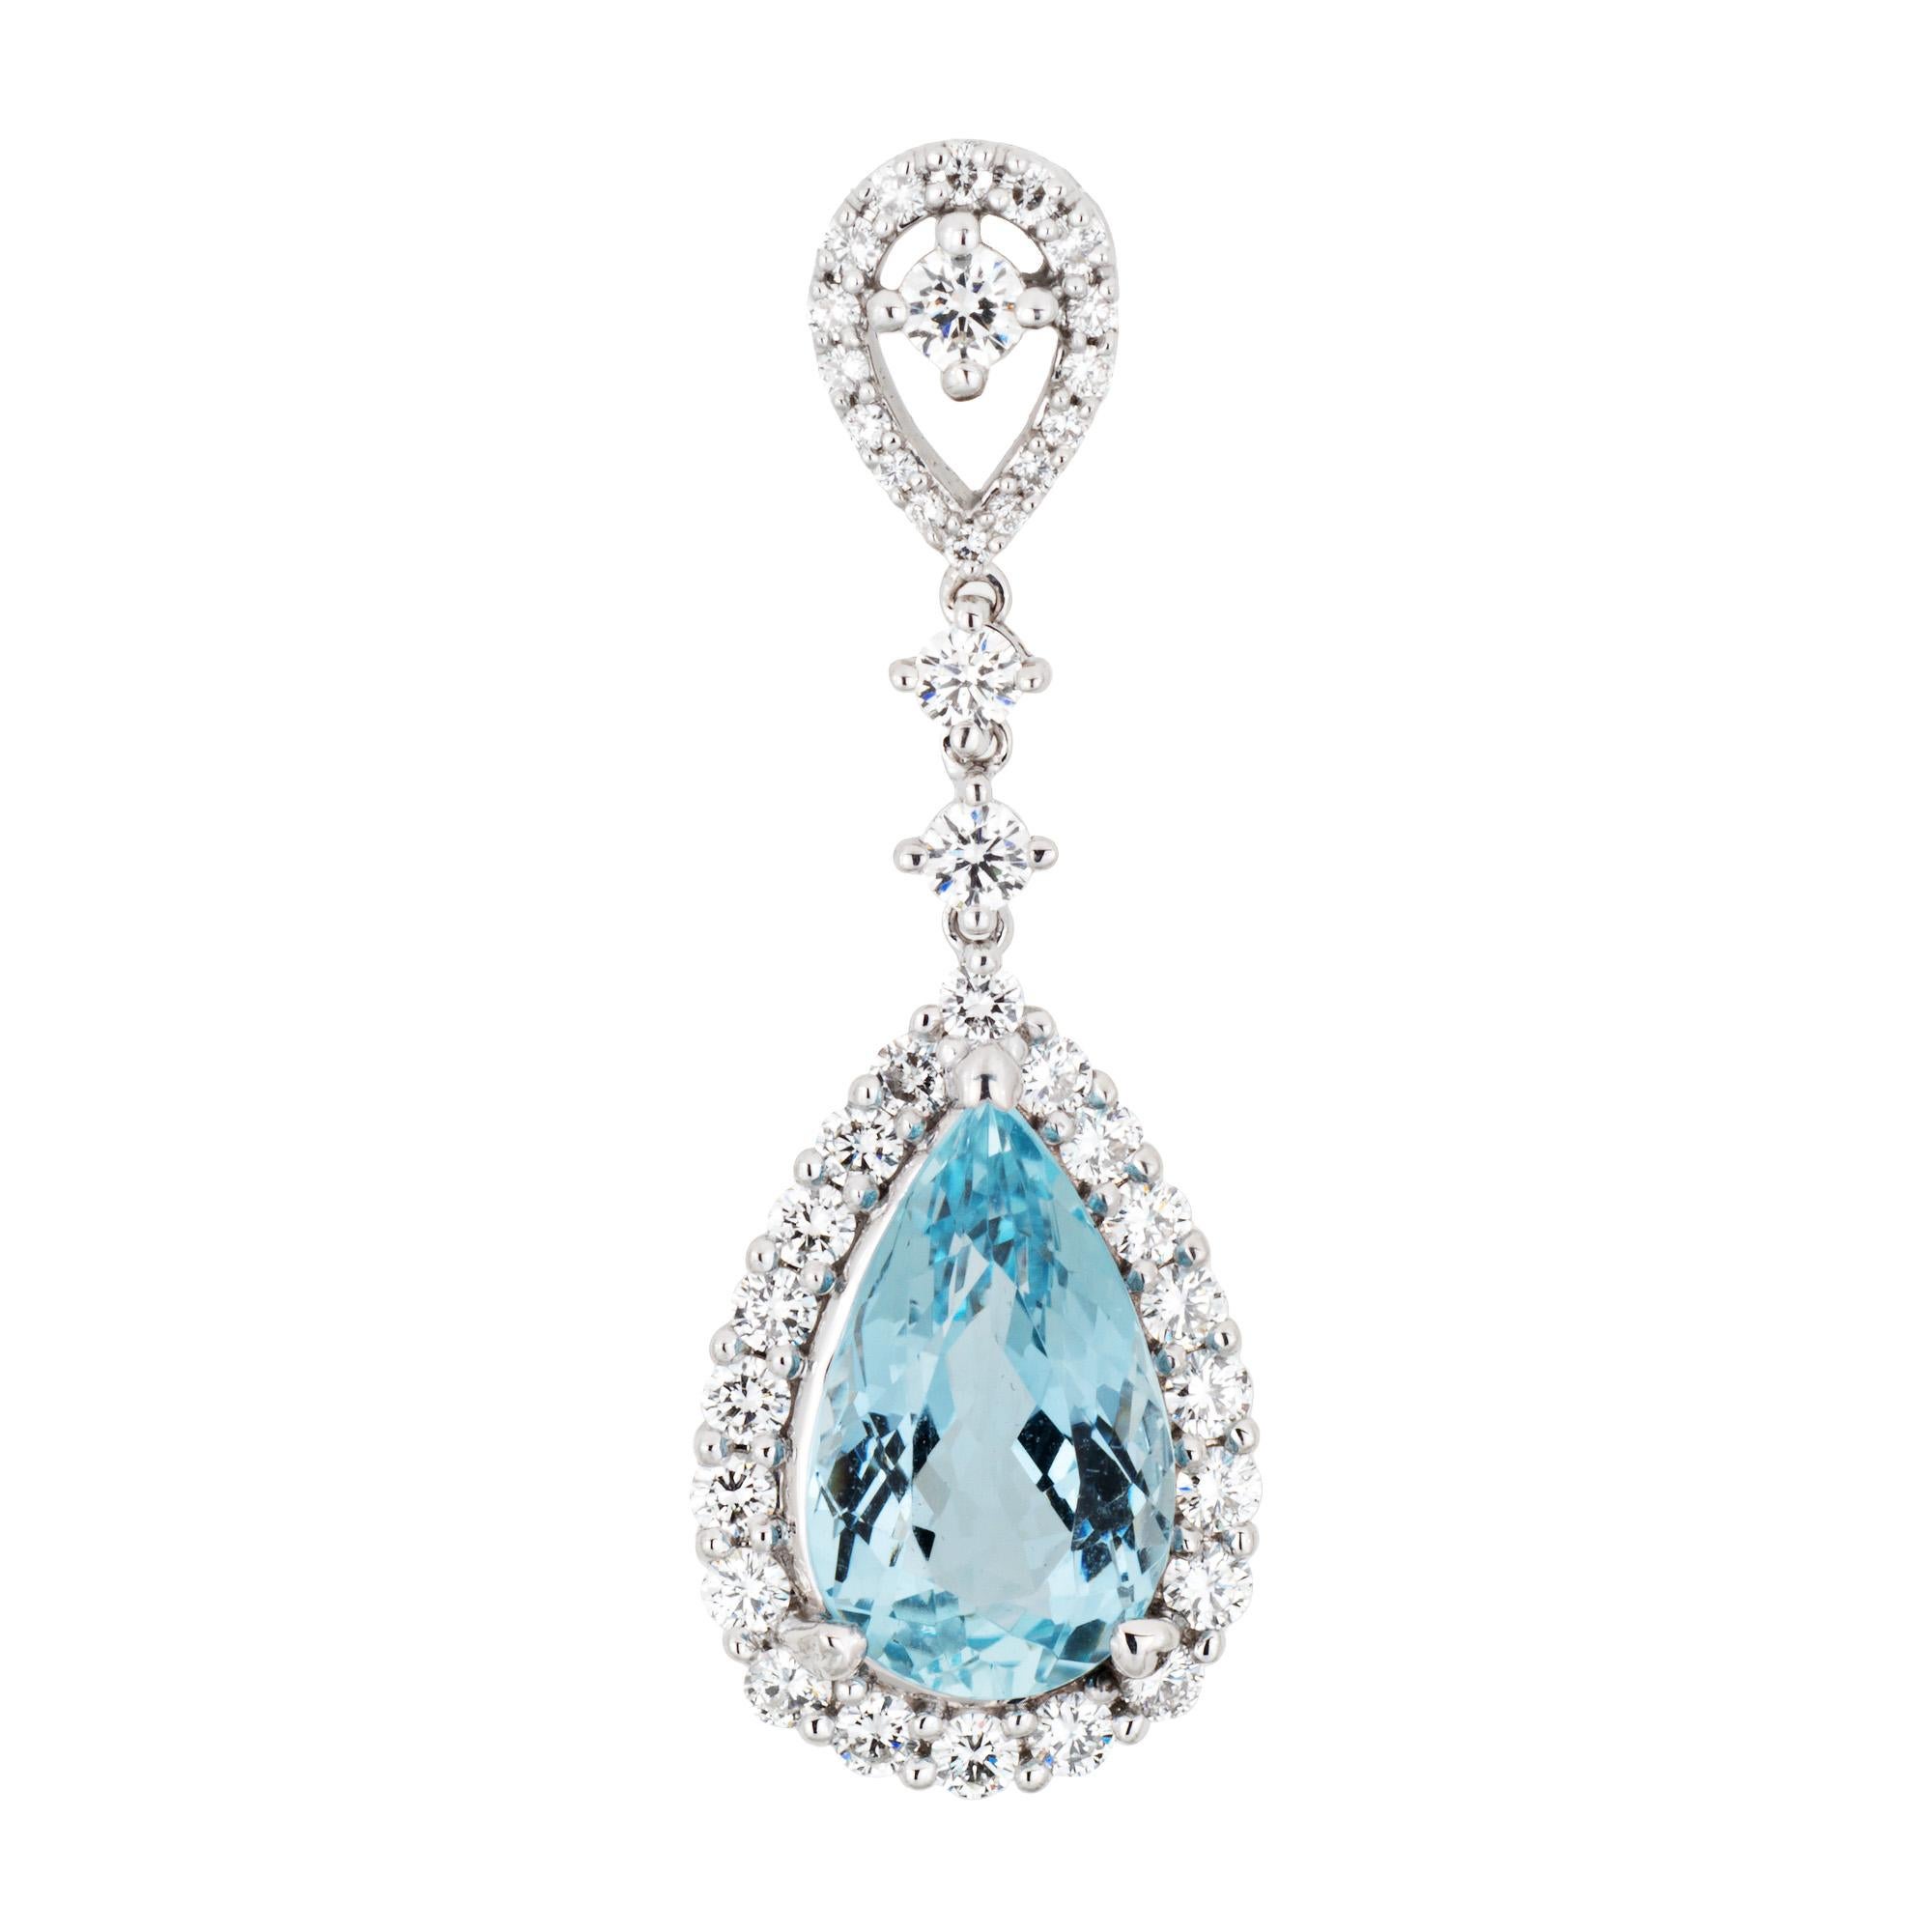 Contemporary 3.35ct Aquamarine Diamond Pendant Estate 18k White Gold Pear Fine Jewelry For Sale